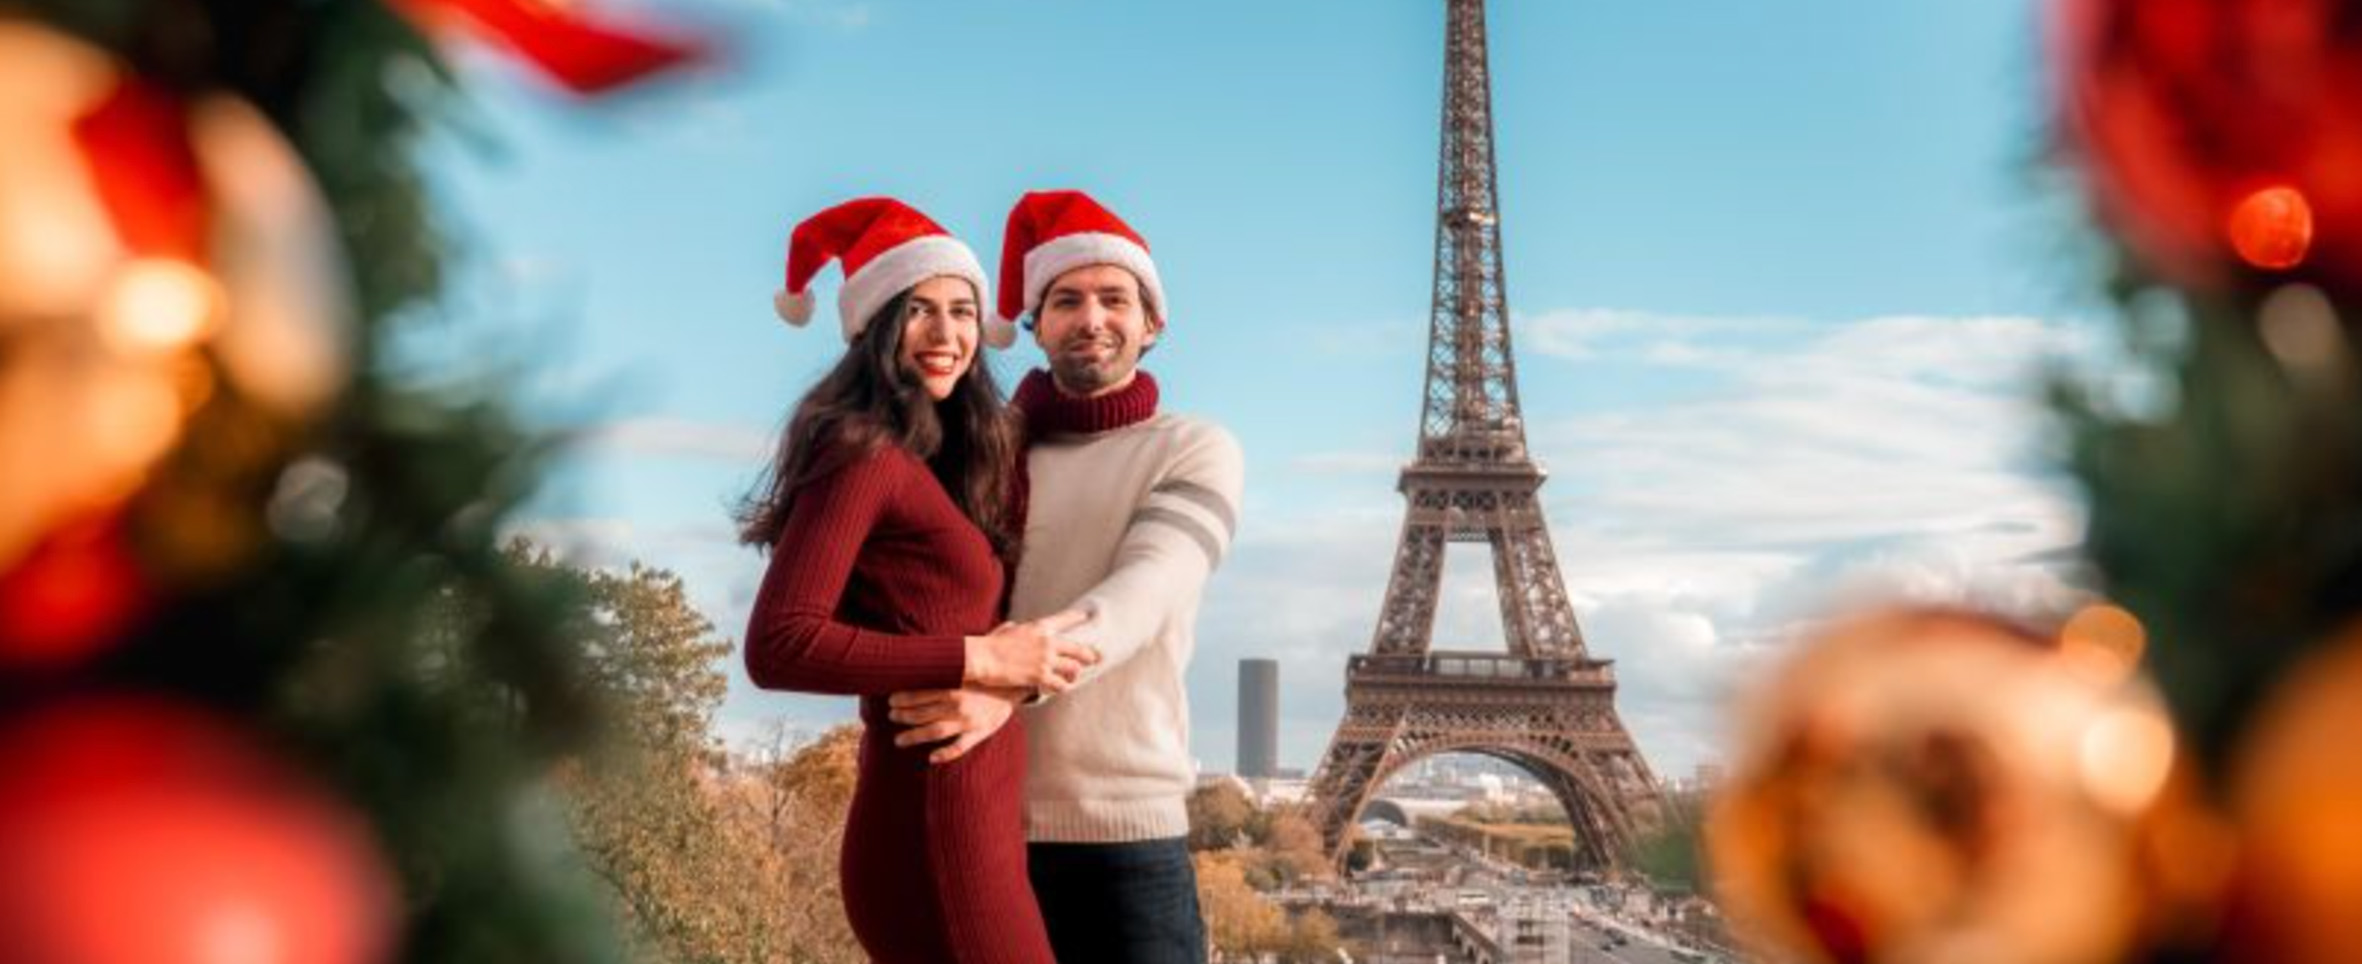 sesión de fotos en París con un ambiente navideño y la torre Eiffel de fondo